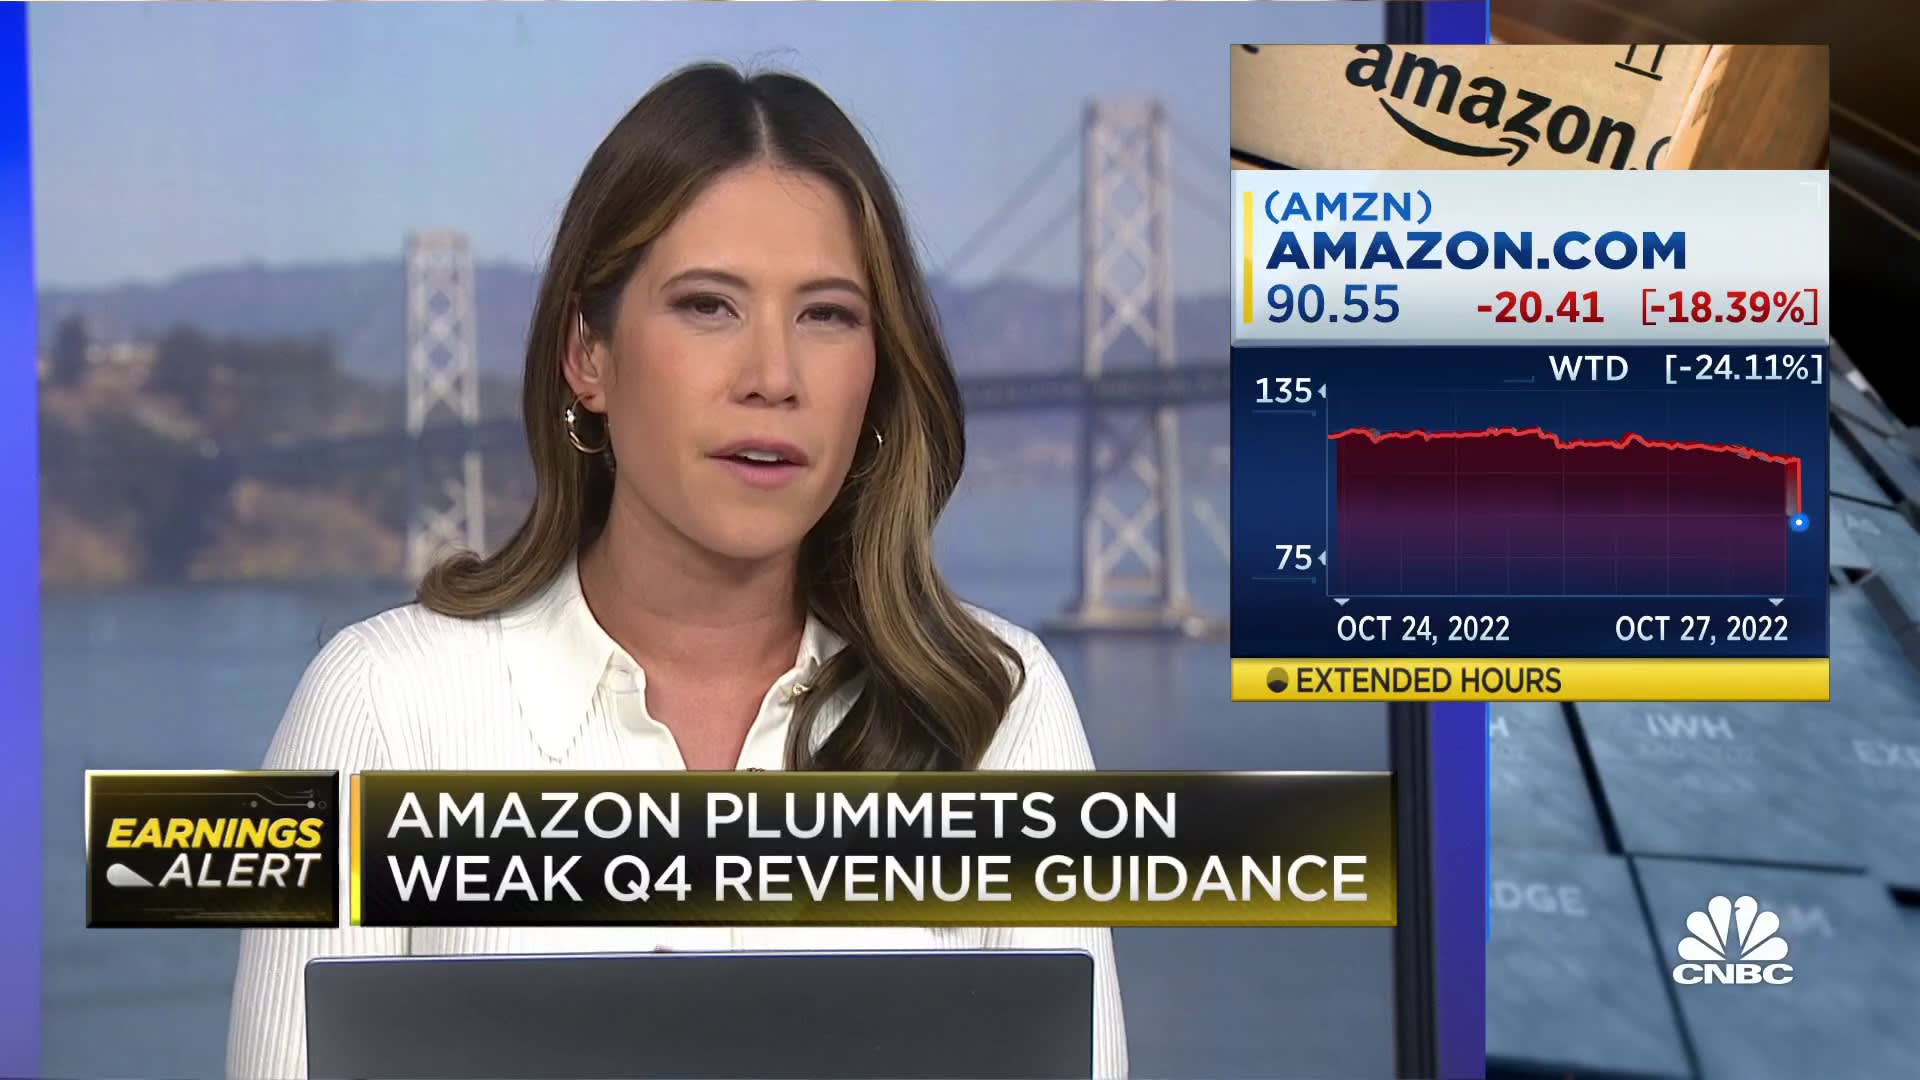 Amazon geliri özlüyor, hisse senedi zayıf dördüncü çeyrek rehberliğinde düşüyor